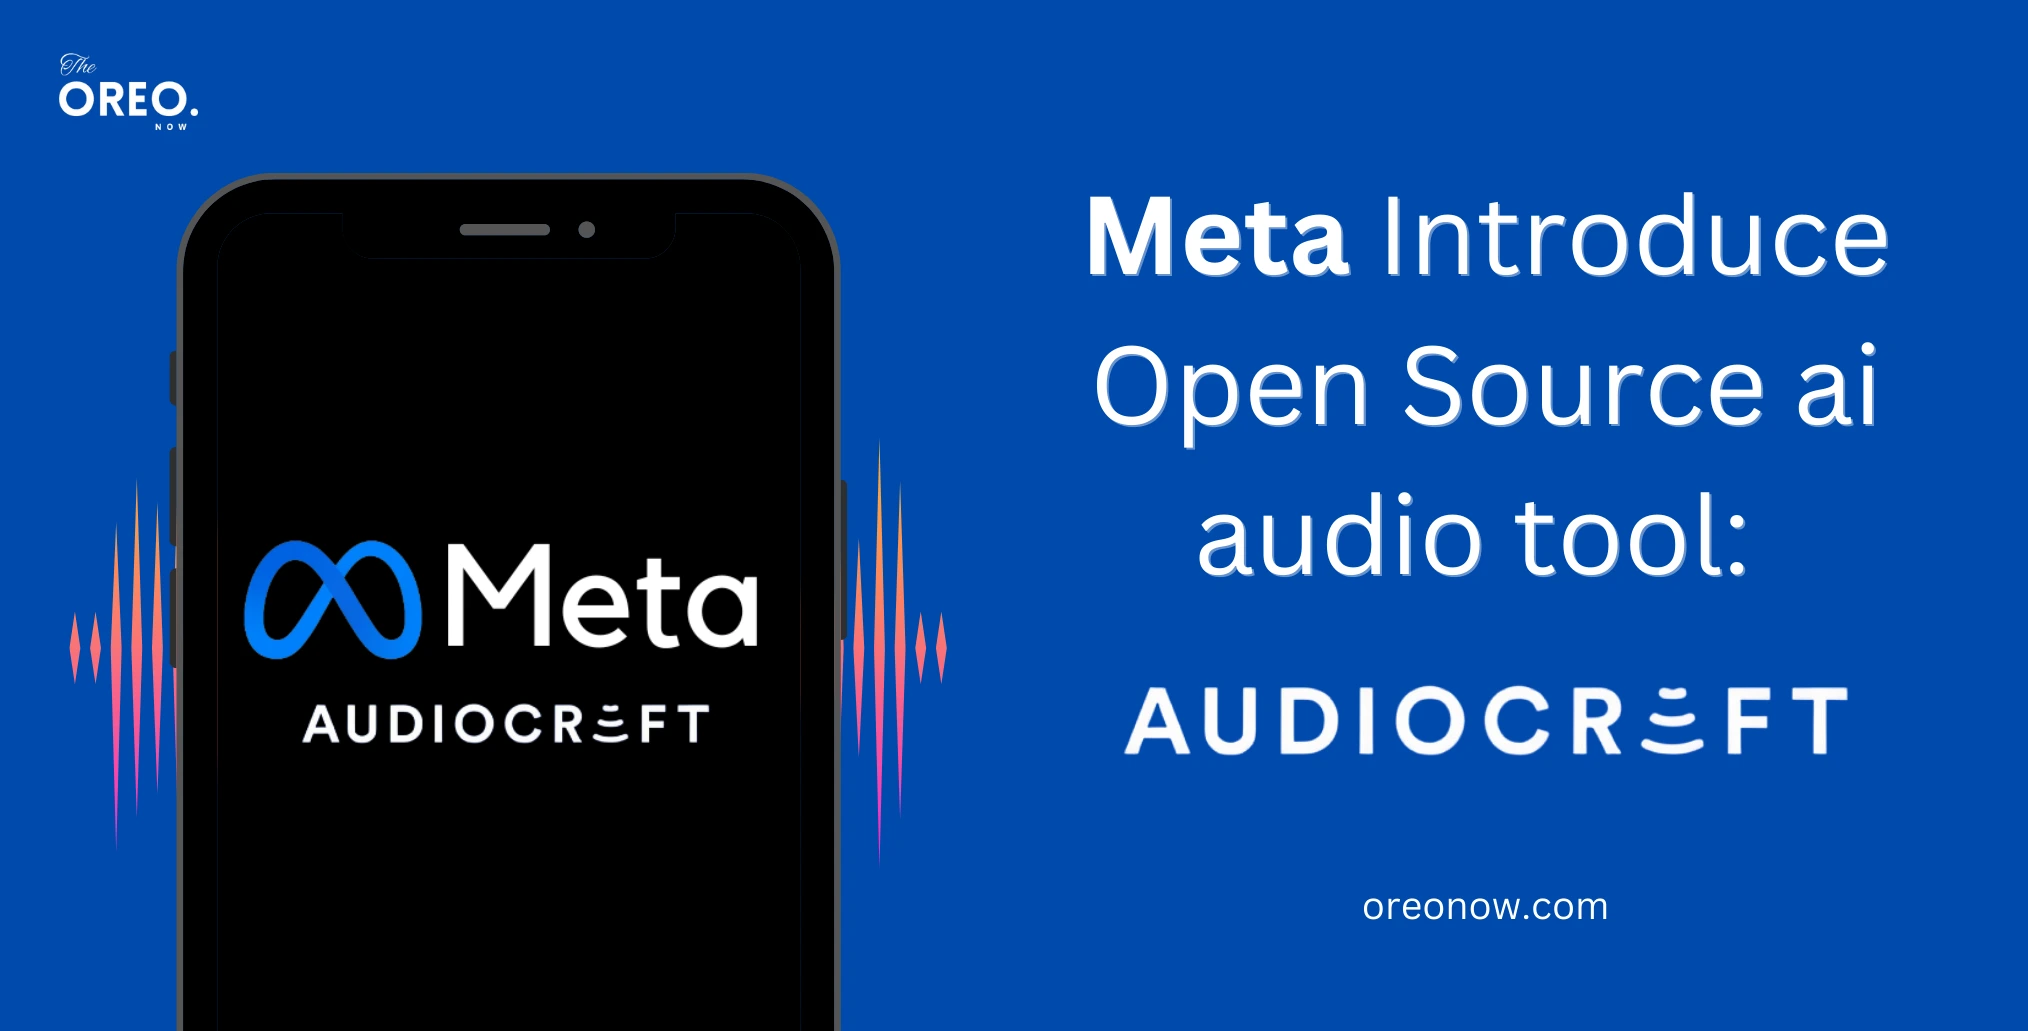 Meta audiocraft